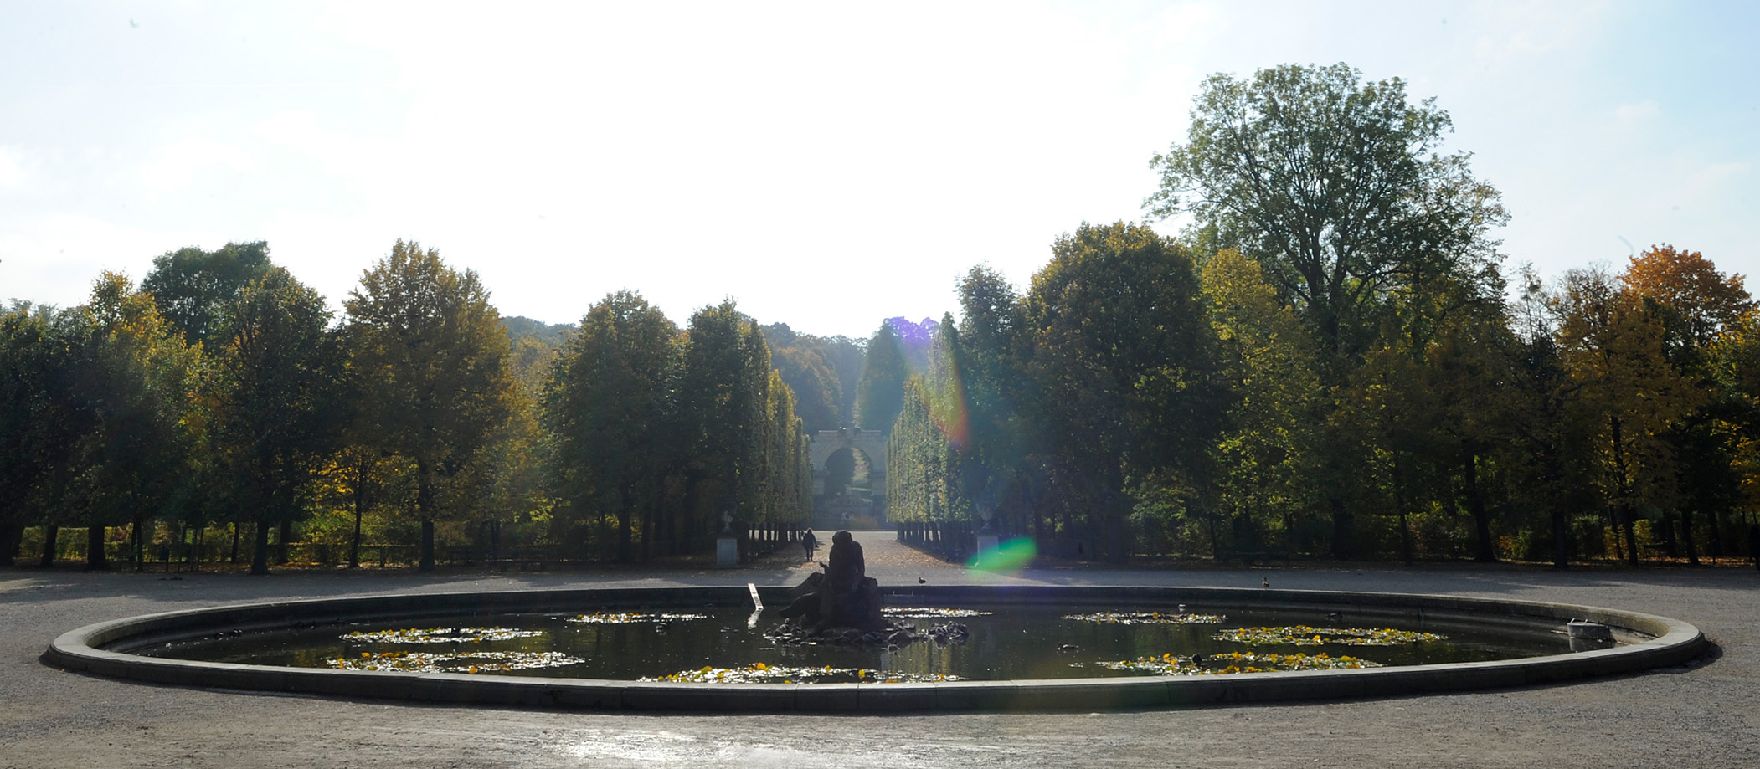 Einer der Brunnen im Park des Schloss Schönbrunn. Schlagworte: Brunnen, Park, Schönbrunn, Stadtlandschaft